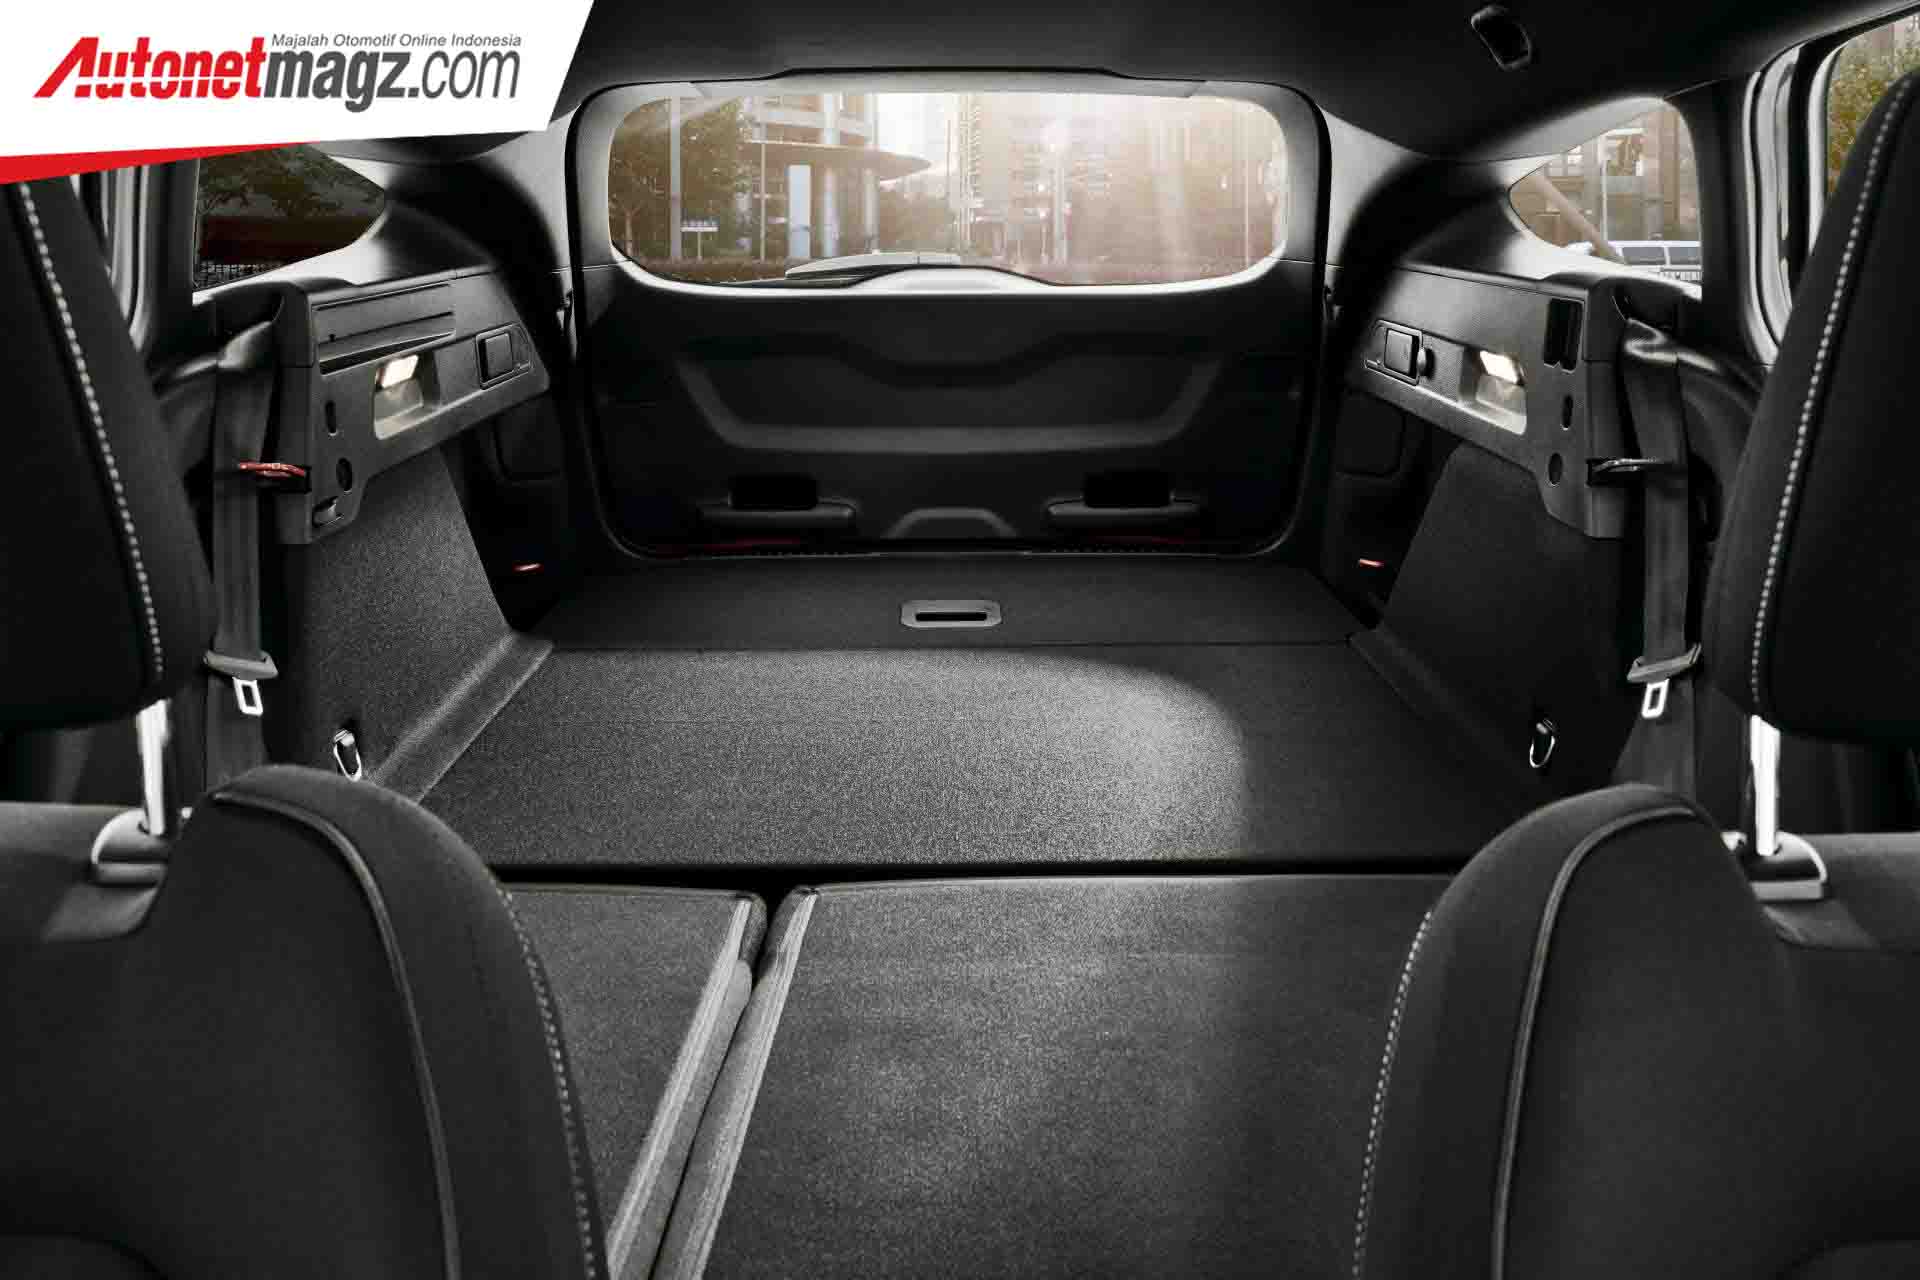 Berita, Bagasi Ford Focus ST Wagon 2019: Ford Focus ST Wagon Dirilis, Mobil Keluarga Yang kencang!